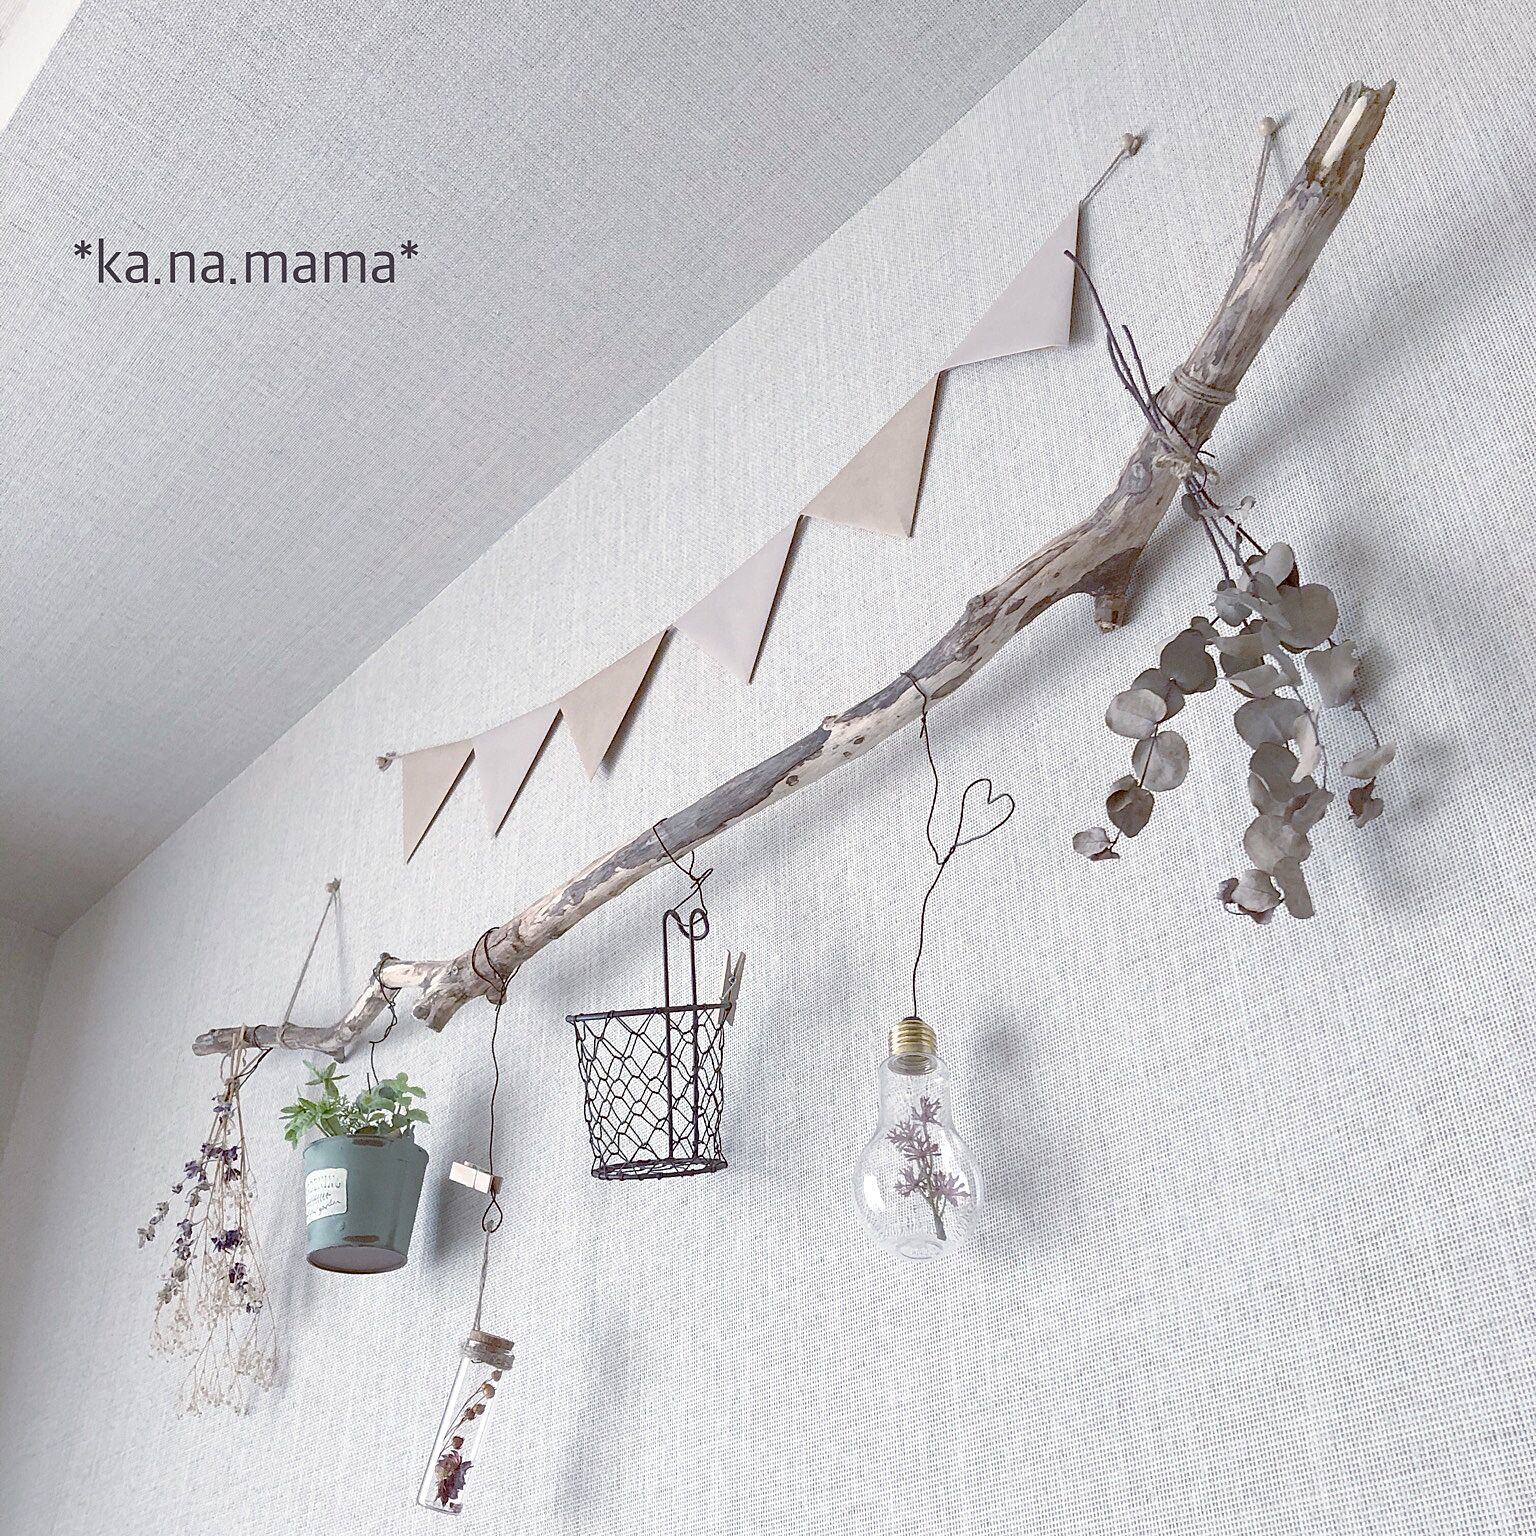 「好みの紙とセロハンテープでつくれる、オリジナルガーランドのレシピ」 by ka.na.mamaさん